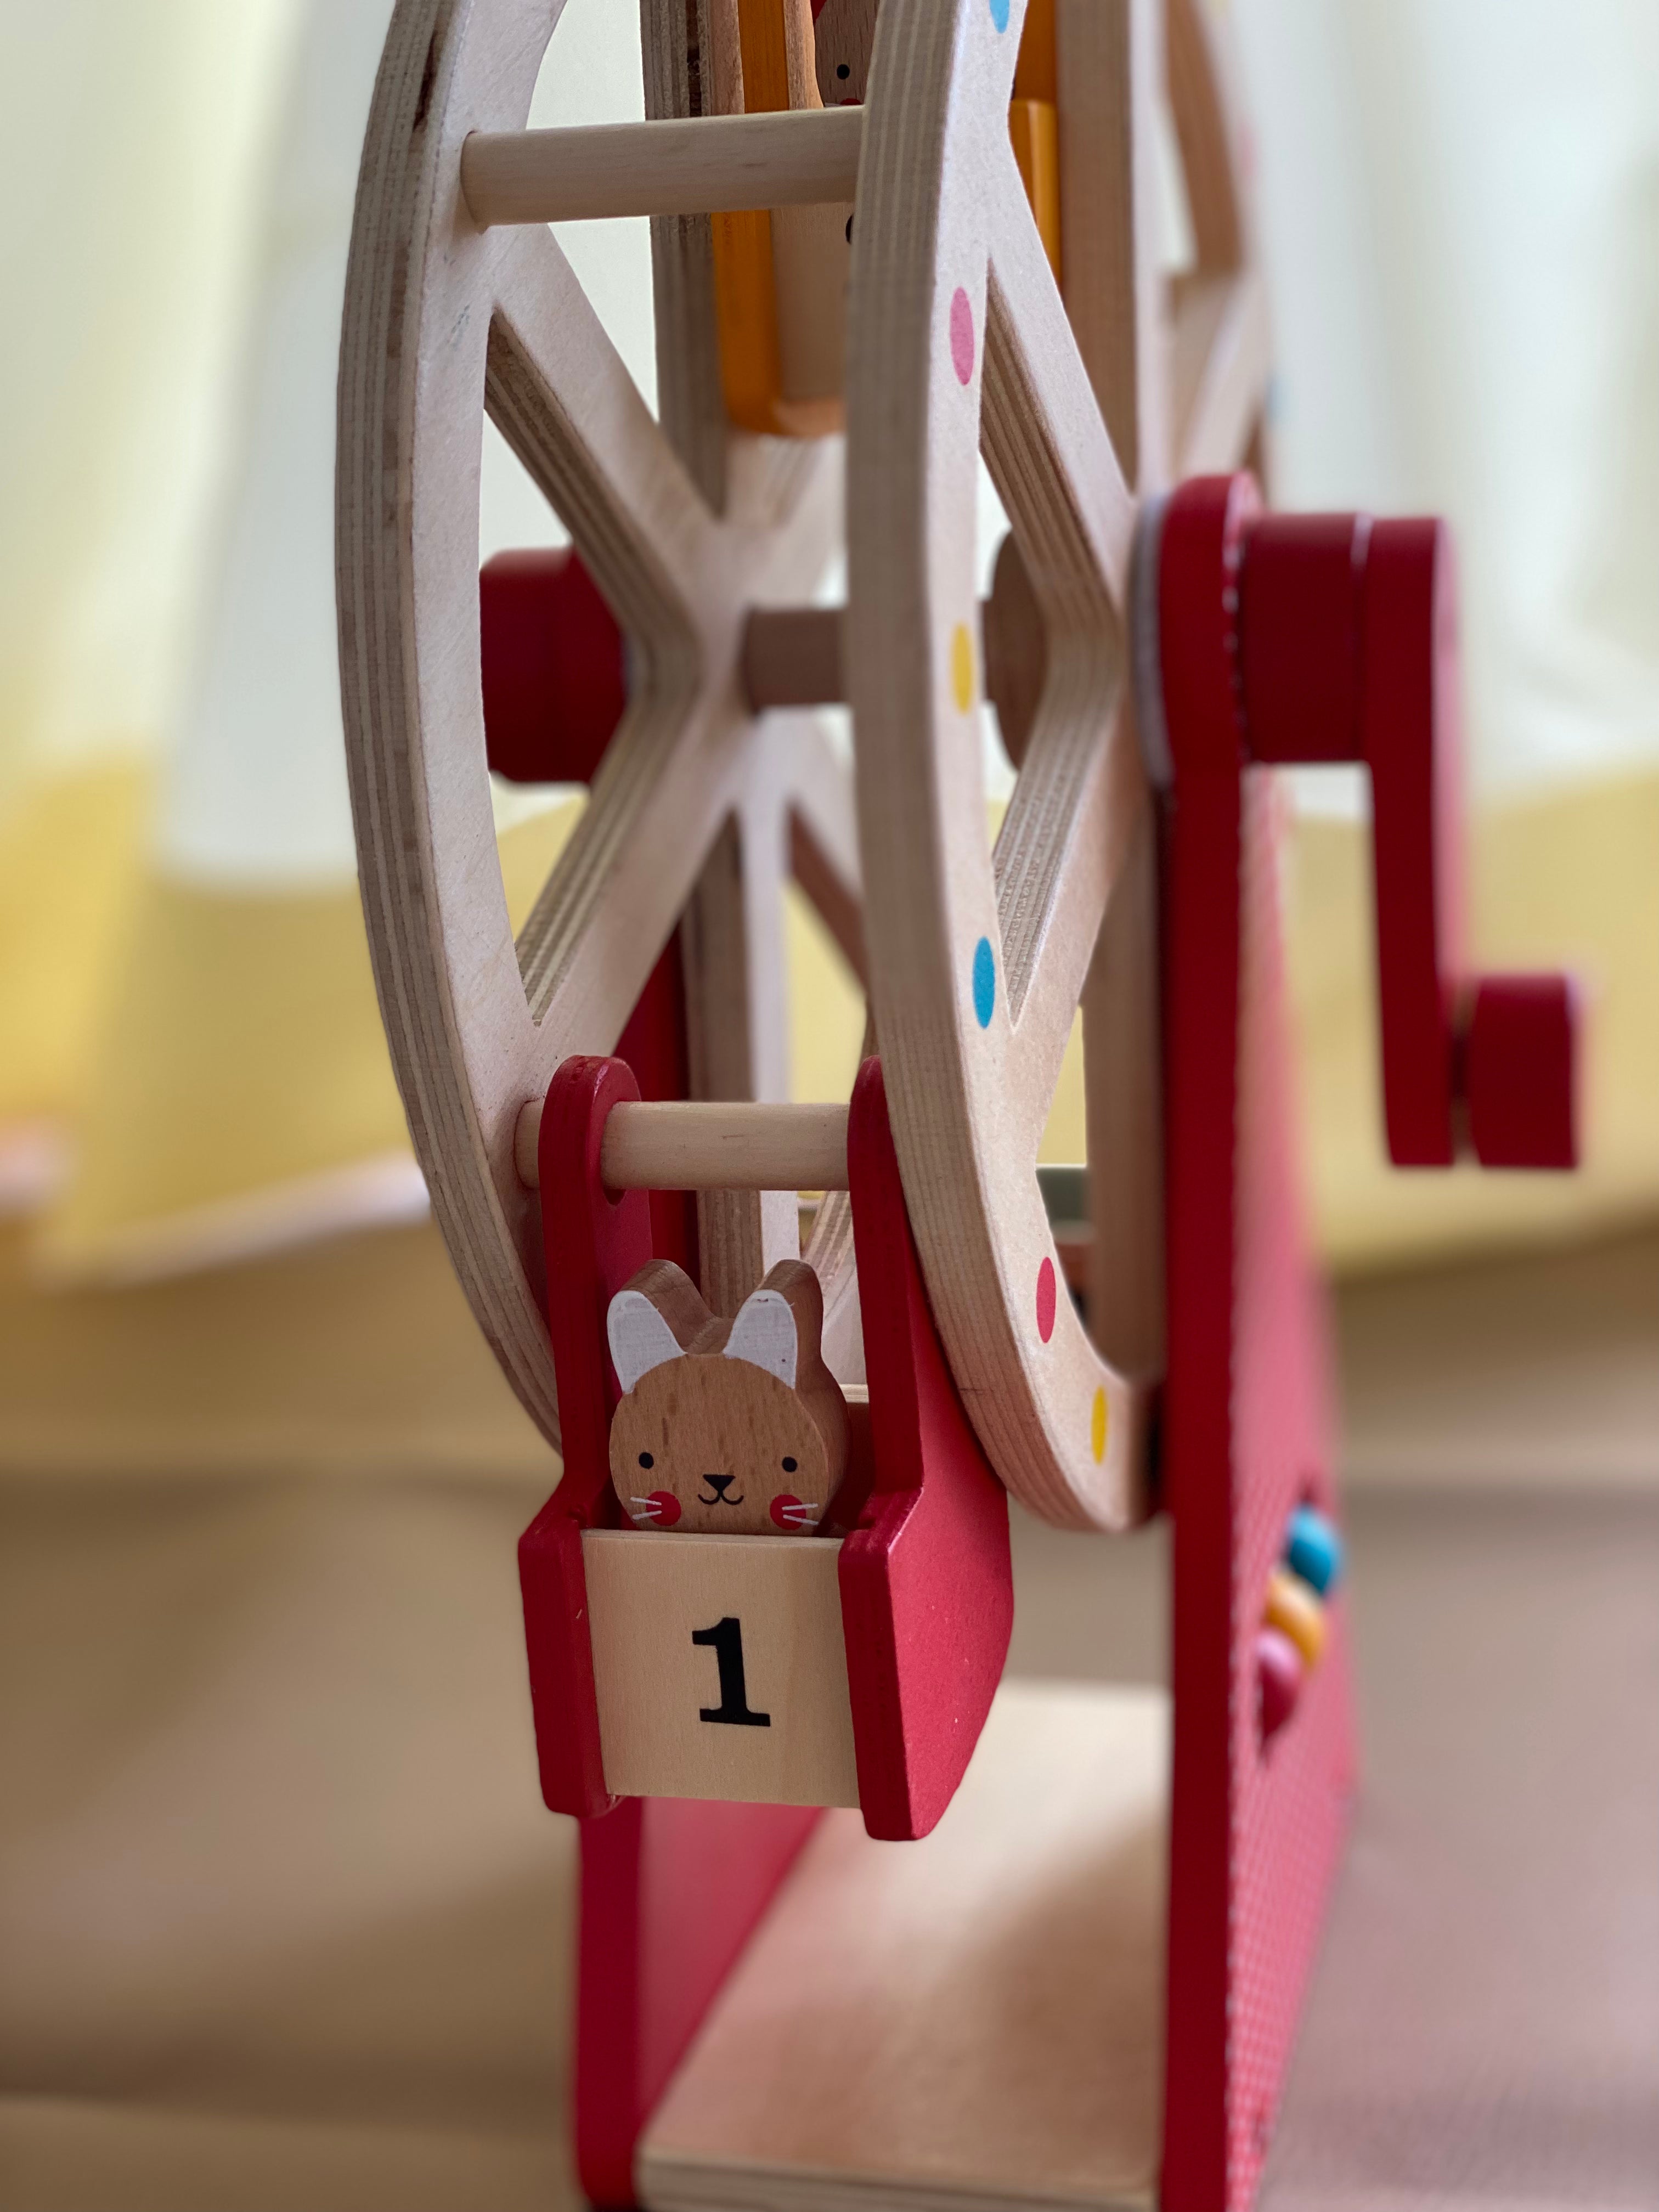 Wooden Ferris Wheel Carnival Play Set